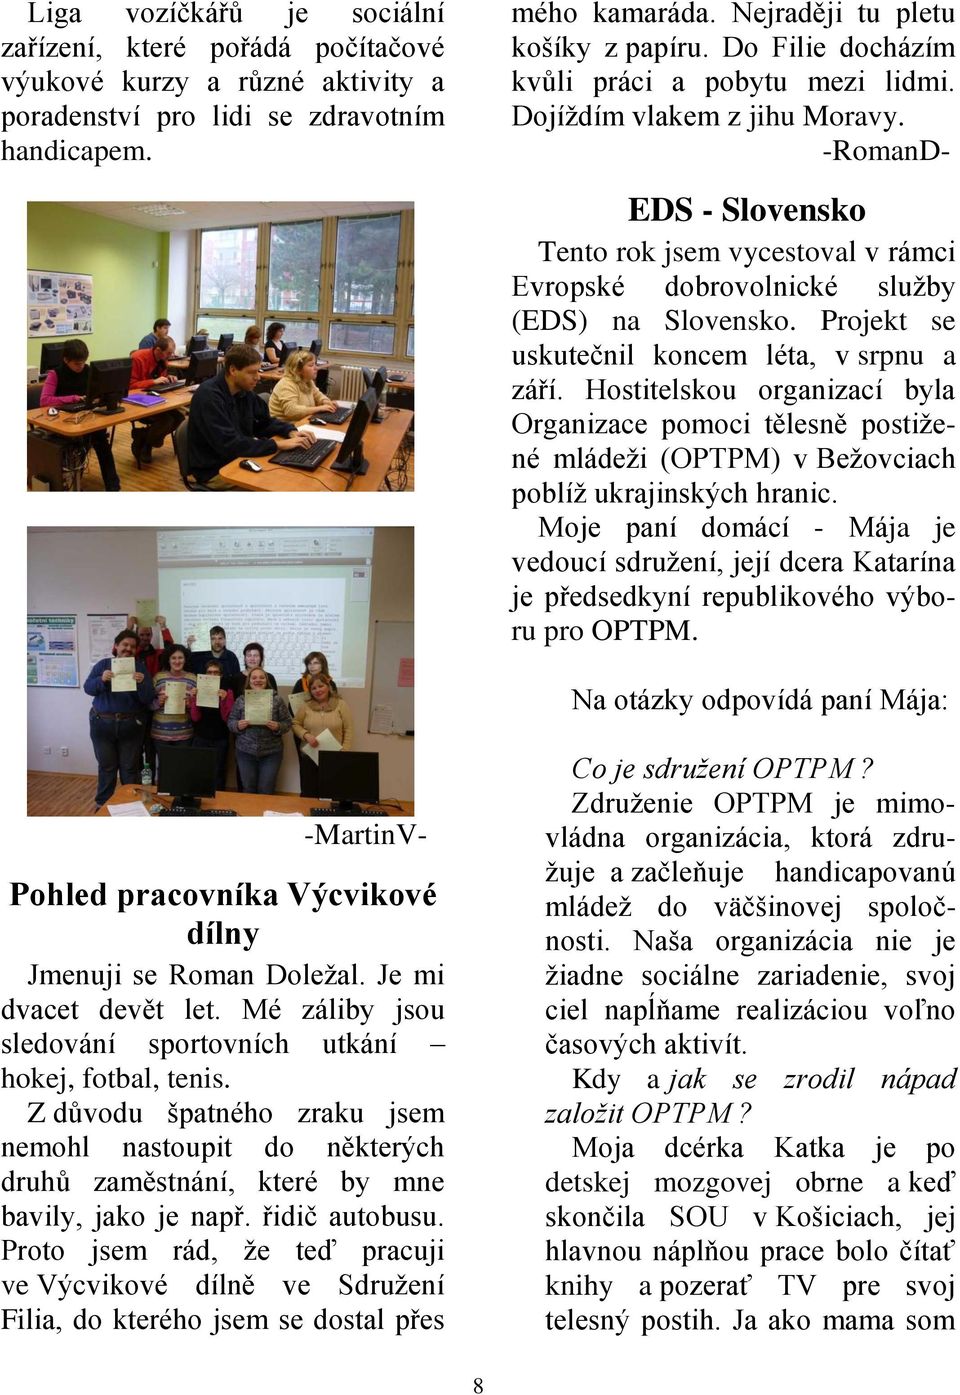 Projekt se uskutečnil koncem léta, v srpnu a září. Hostitelskou organizací byla Organizace pomoci tělesně postižené mládeži (OPTPM) v Bežovciach poblíž ukrajinských hranic.